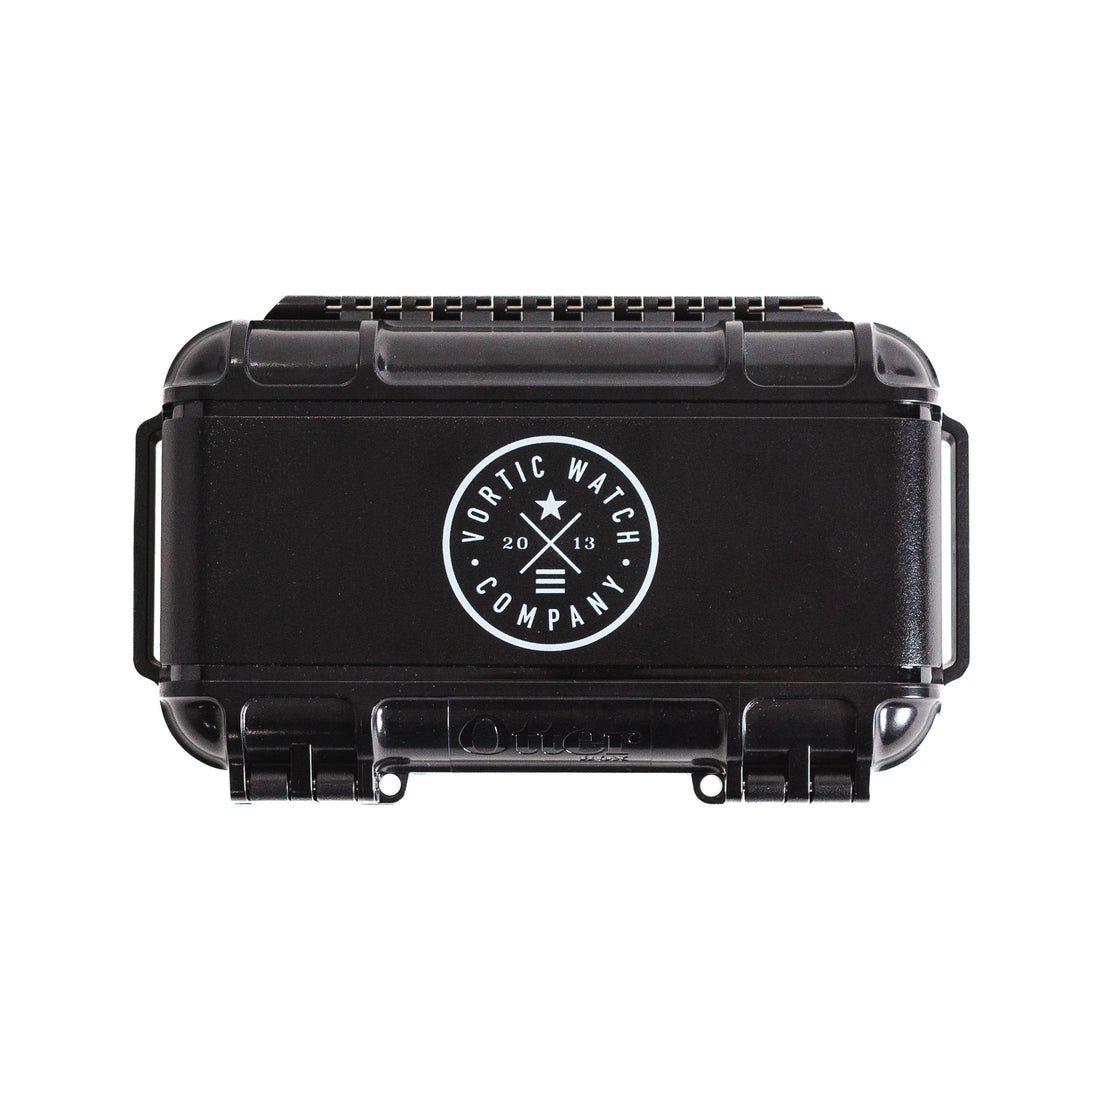 Vortic Watch Box